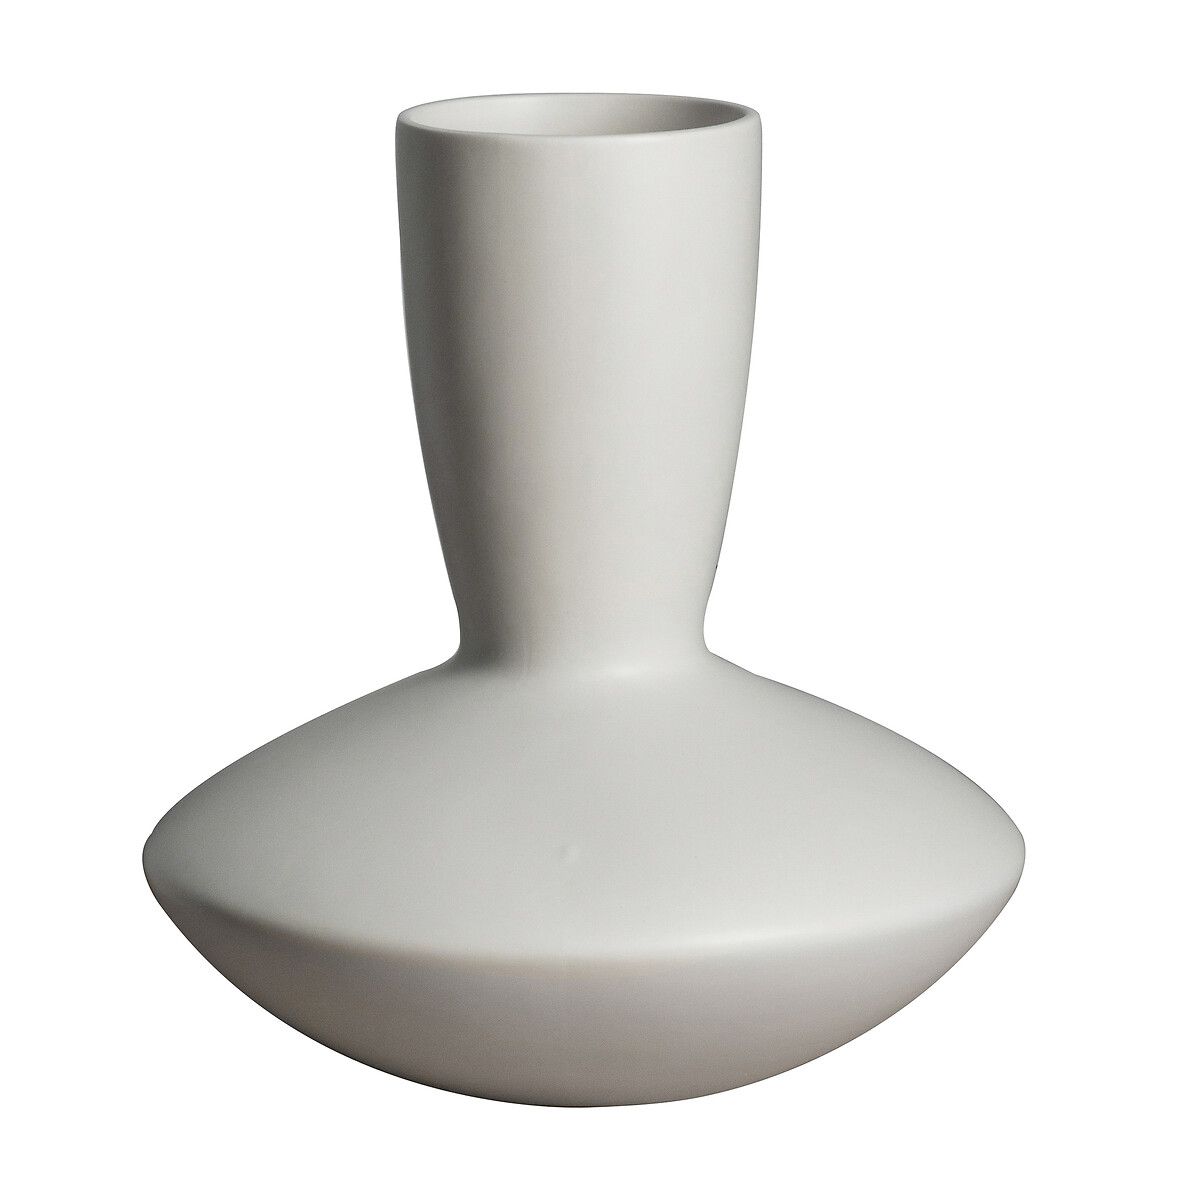 29cm White Ceramic Vase | La Redoute (UK)